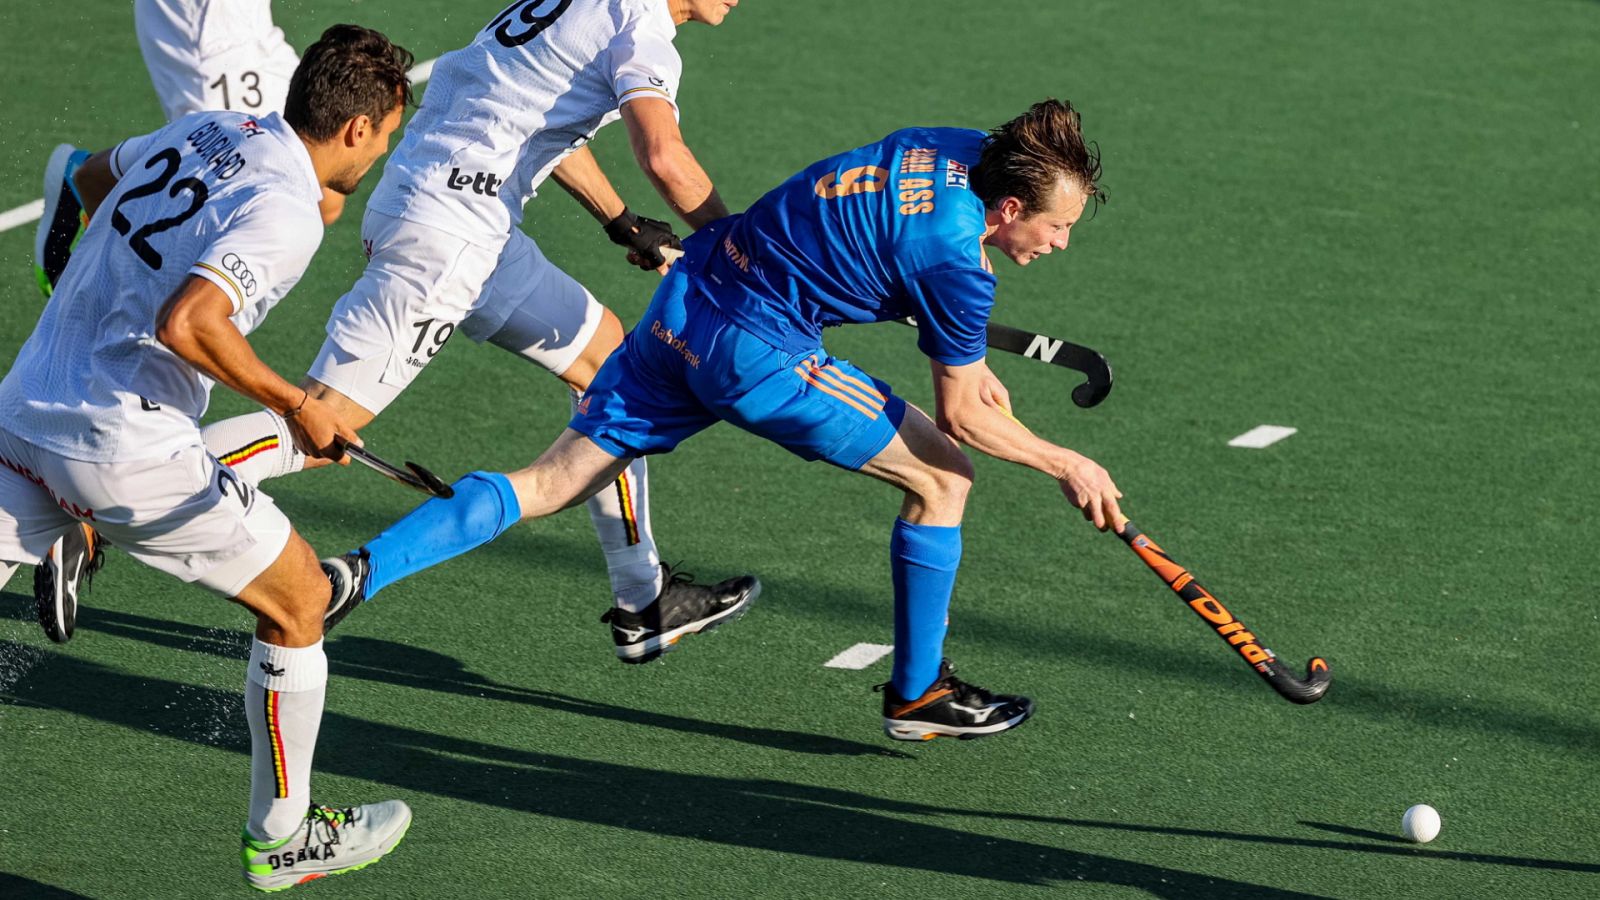 Hockey hierba - Campeonato de Europa masculino. 2ª semifinal: Países Bajos - Bélgica